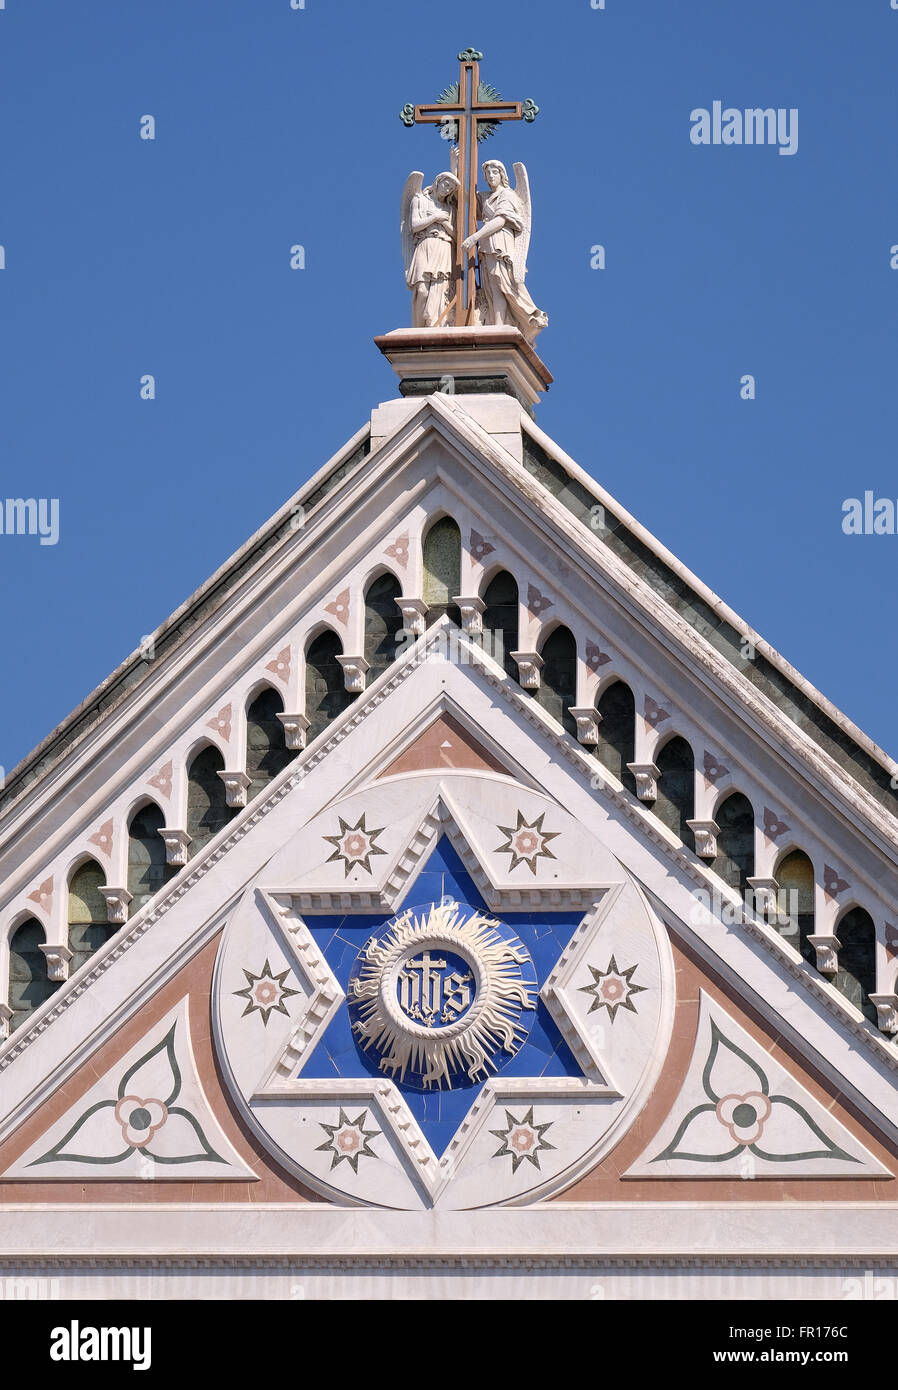 Signe d'IHS, Basilica di Santa Croce (Basilique de la Sainte Croix) - La célèbre église franciscaine à Florence, Italie Banque D'Images